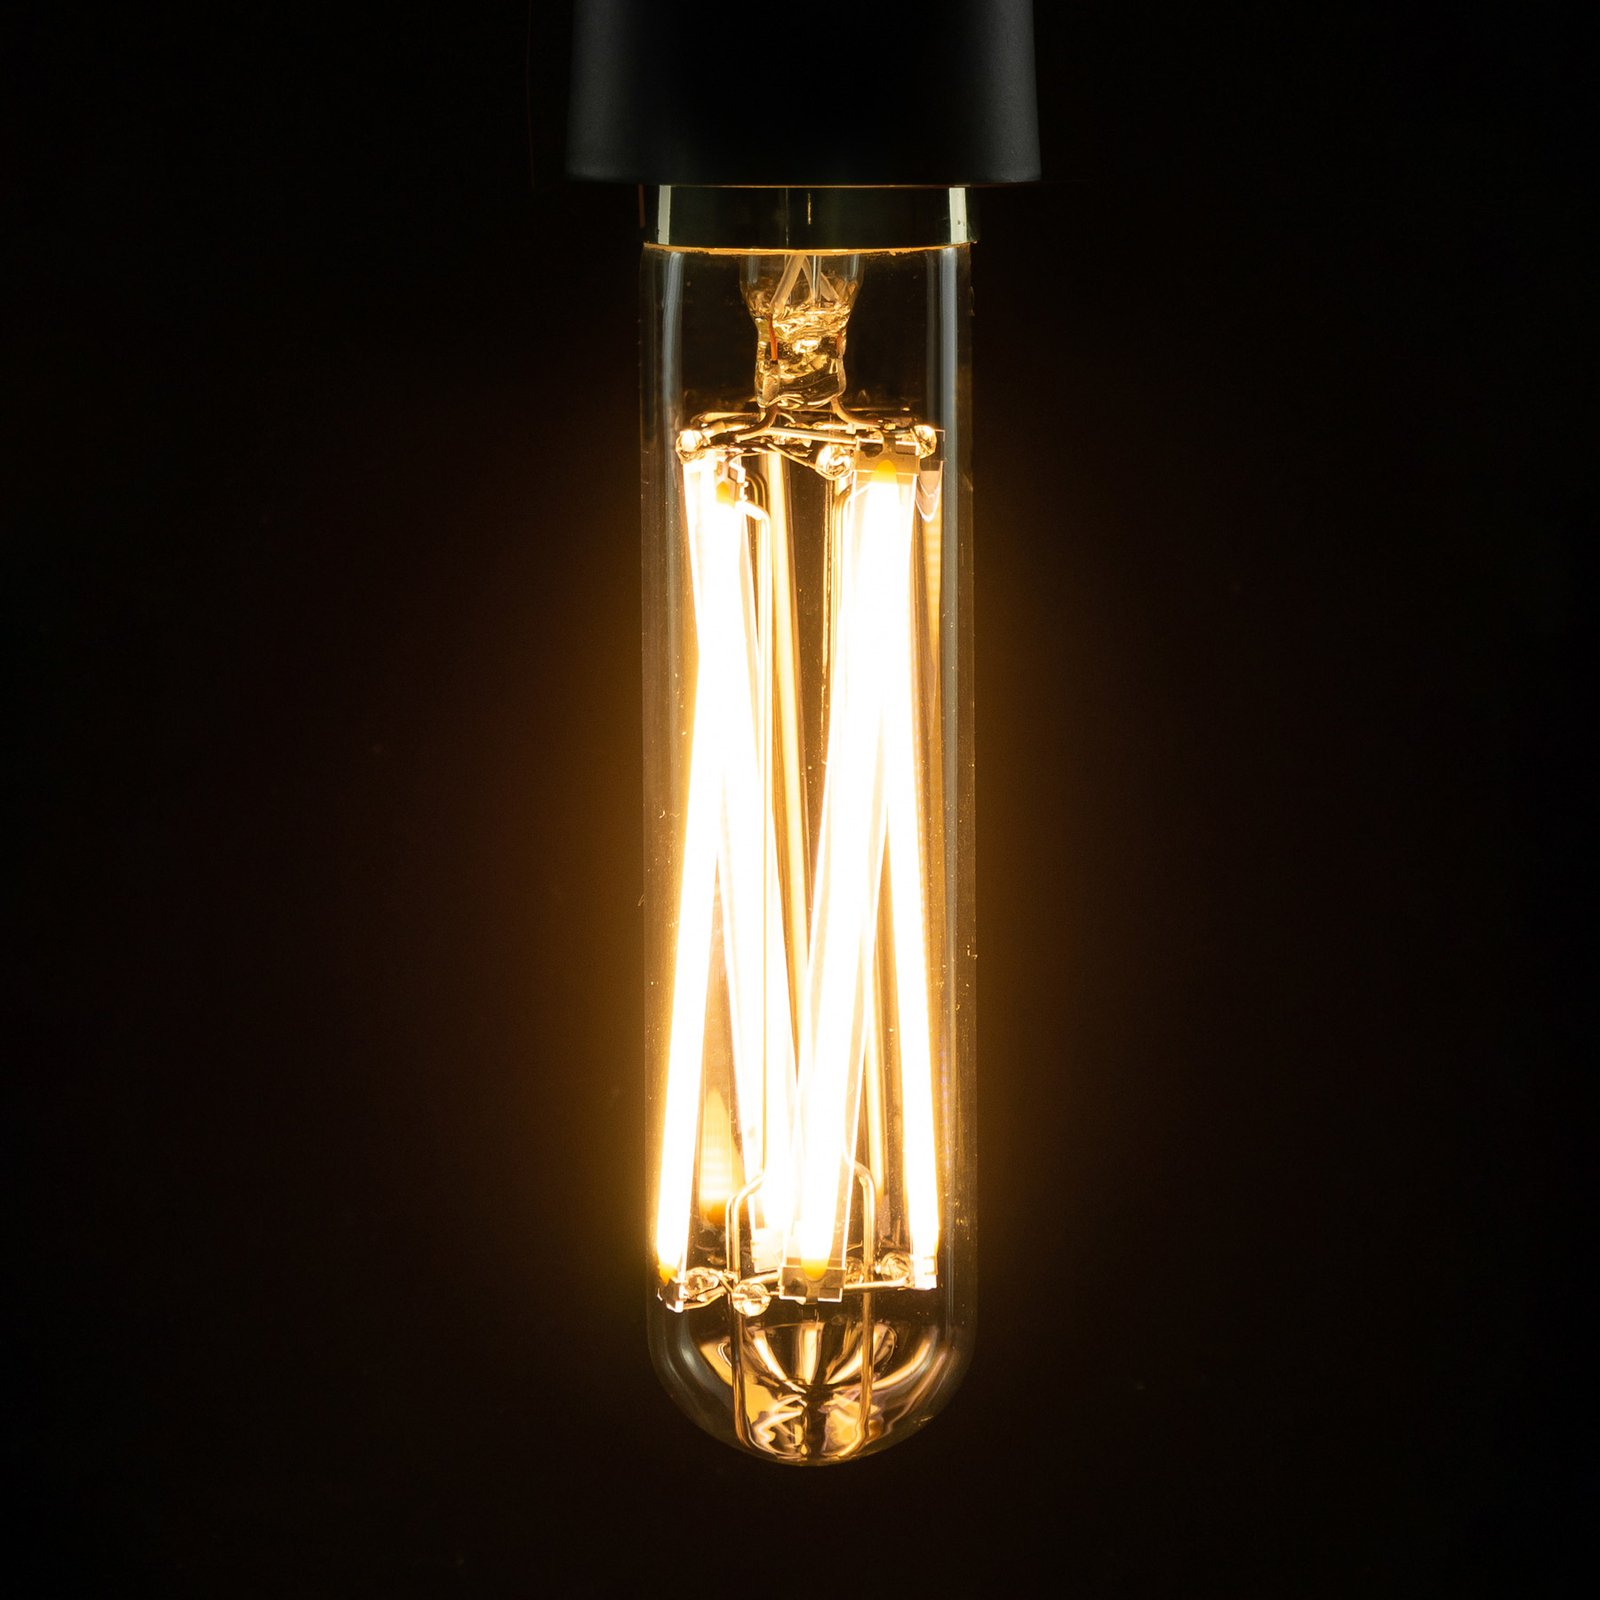 SEGULA LED-Lampe Tube E27 11W 2.700K dimmbar